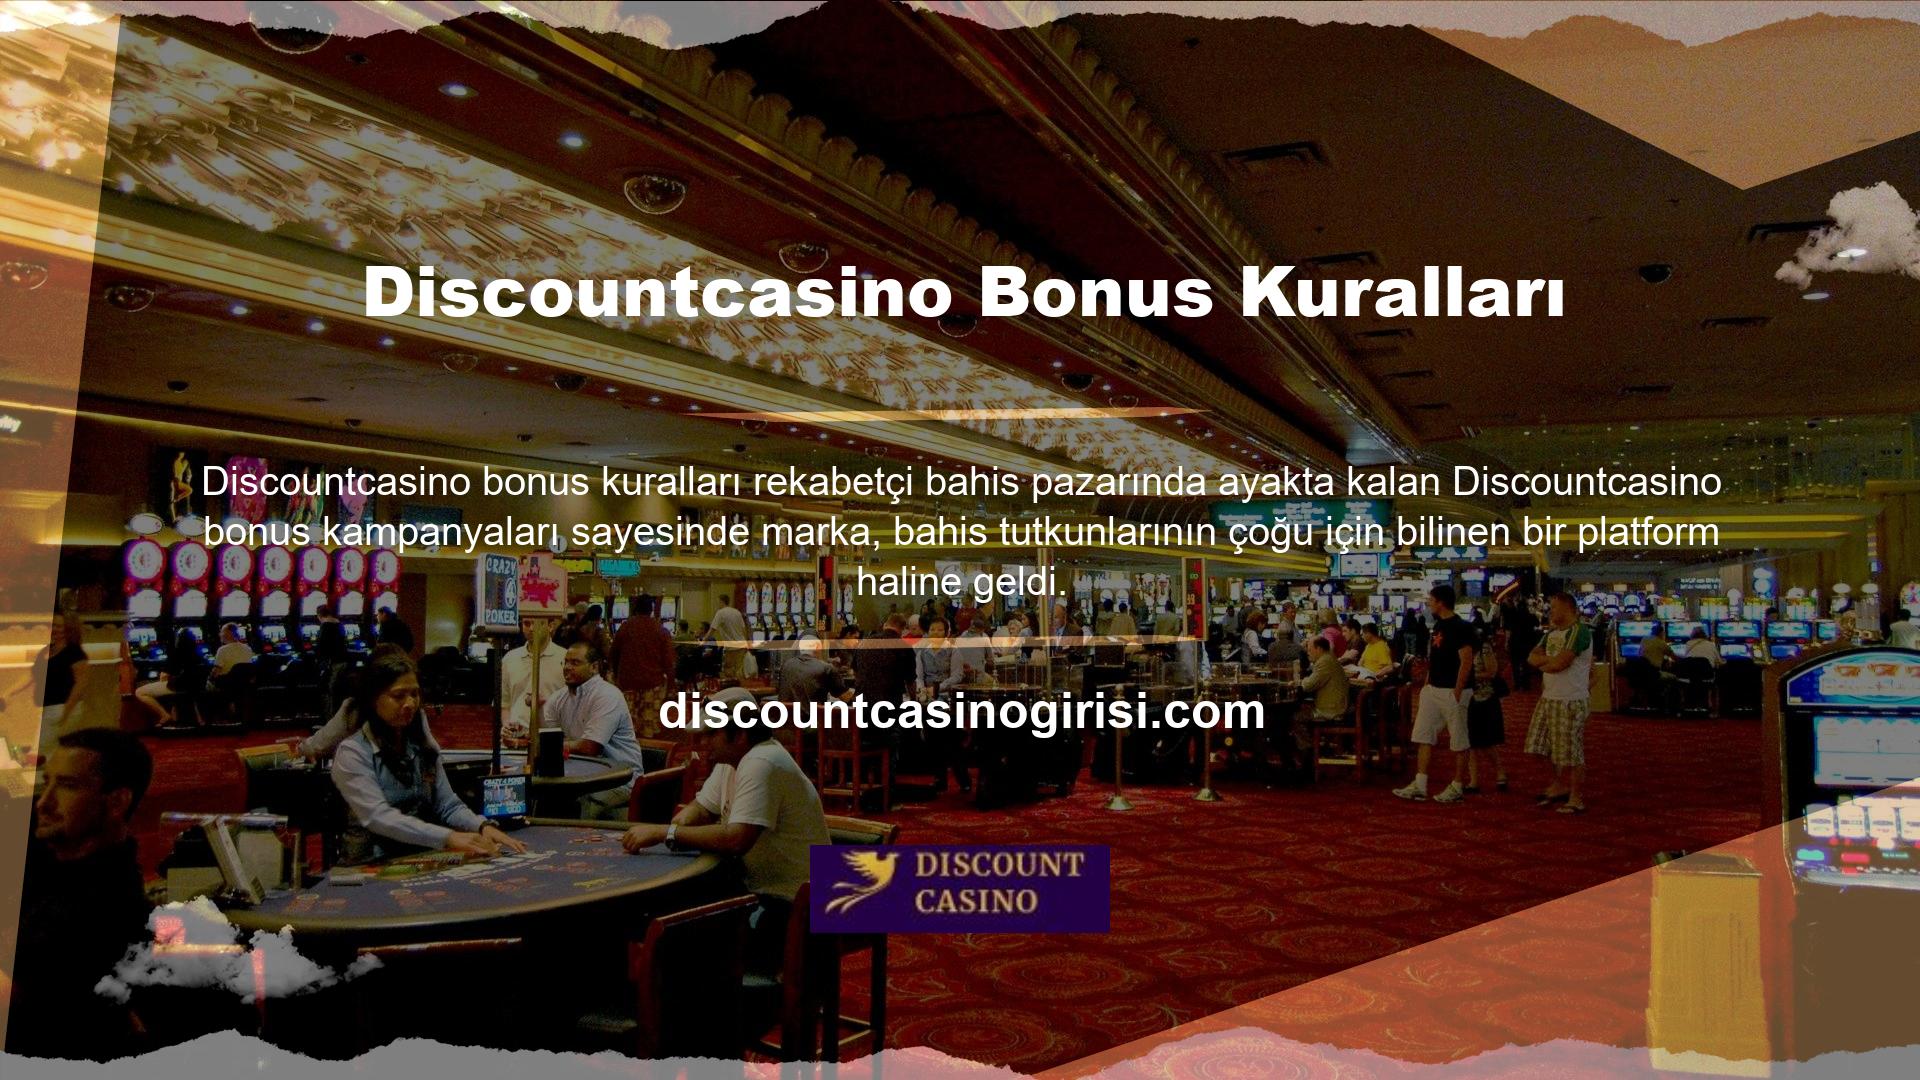 Discountcasino, sektördeki sürdürülebilirliğini sağlamak için ücretsiz bahis bonusları sunarak kullanıcılara hitap eden ve sadece üyelik düşünen isteksiz kullanıcılara açılan lisanslı bahis sitelerinden biridir